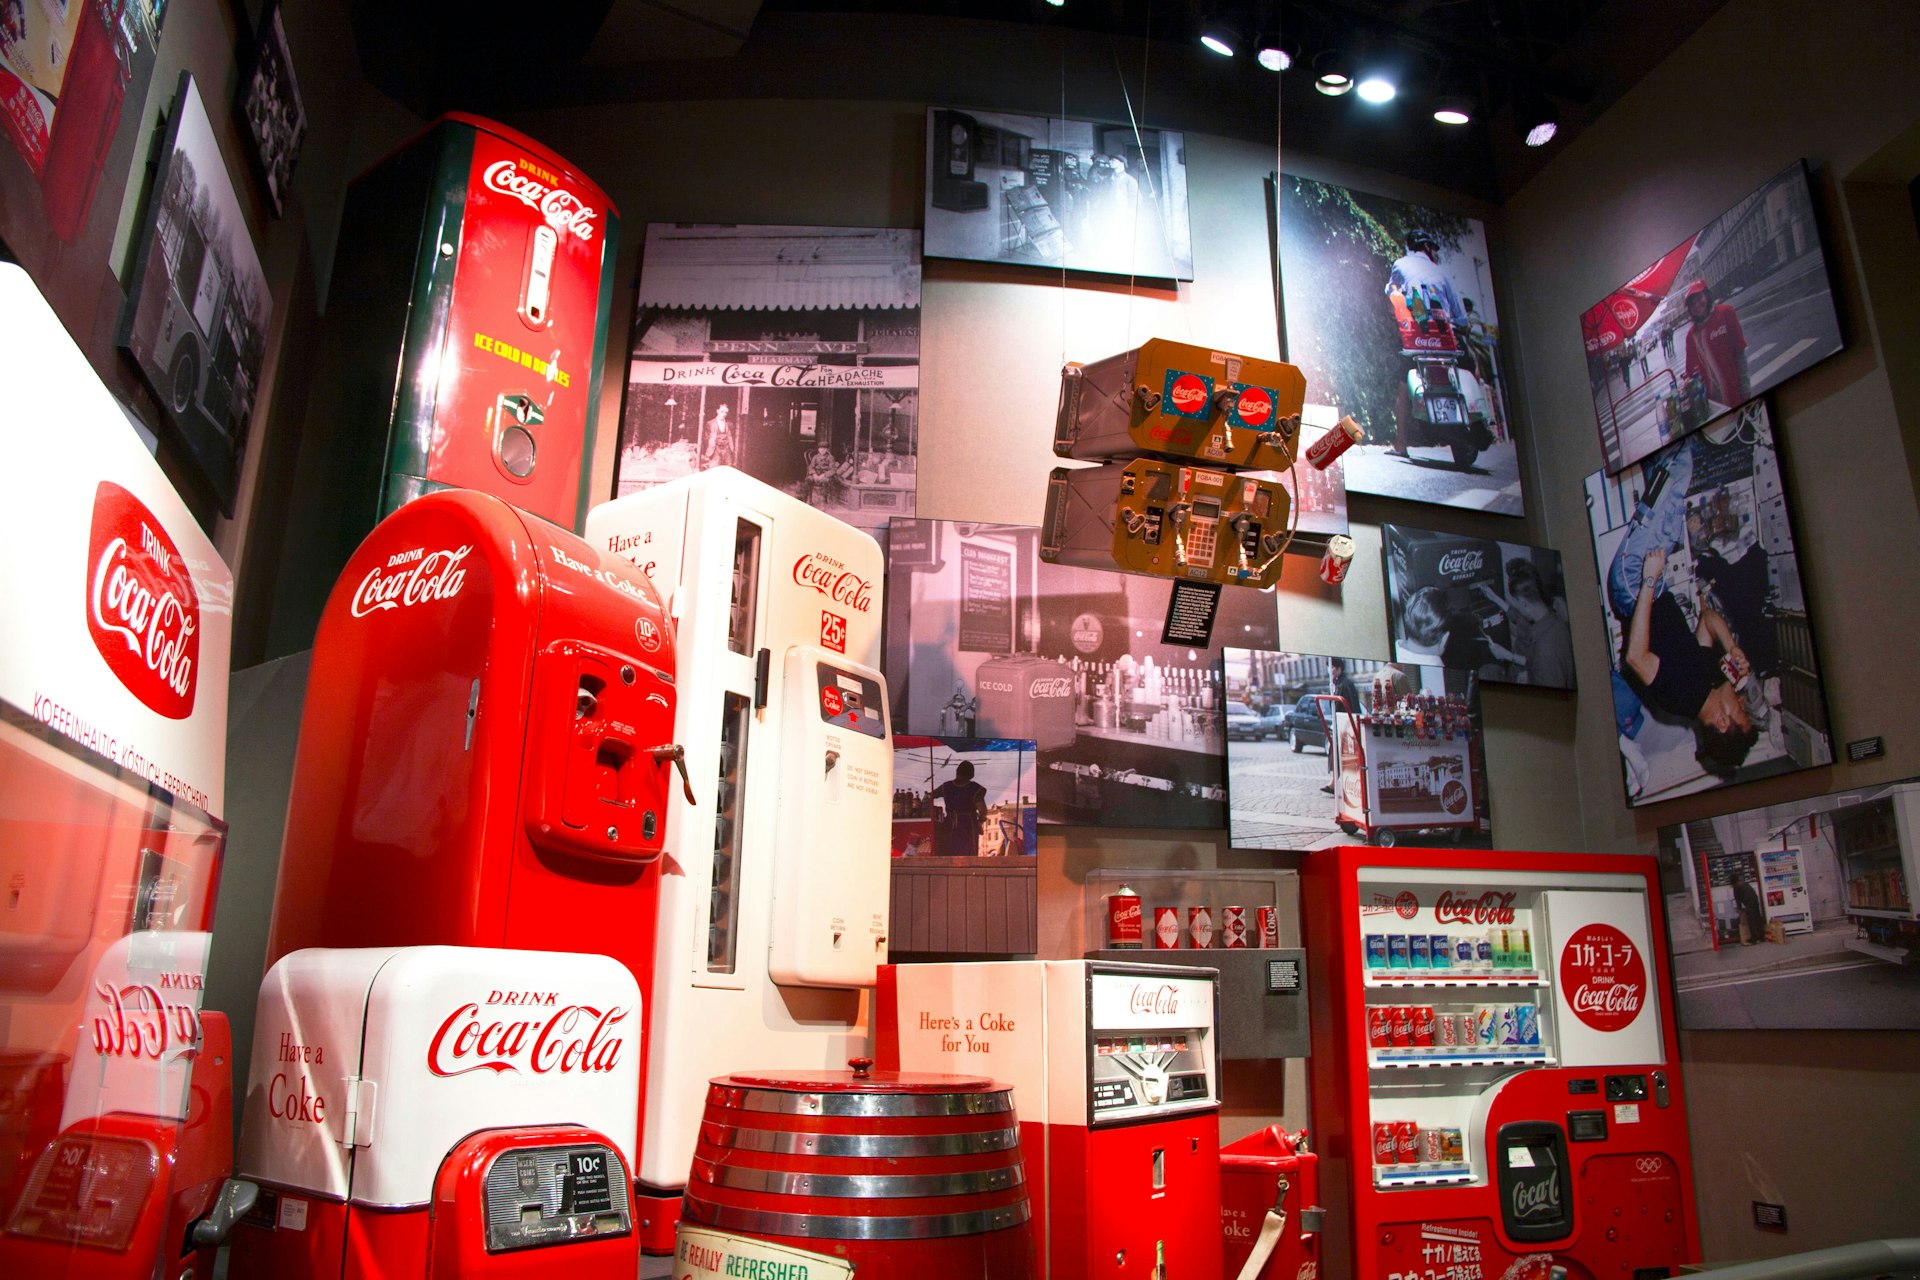 Coca-Cola memorabilia from around the world at the World of Coca-Cola museum in Atlanta.